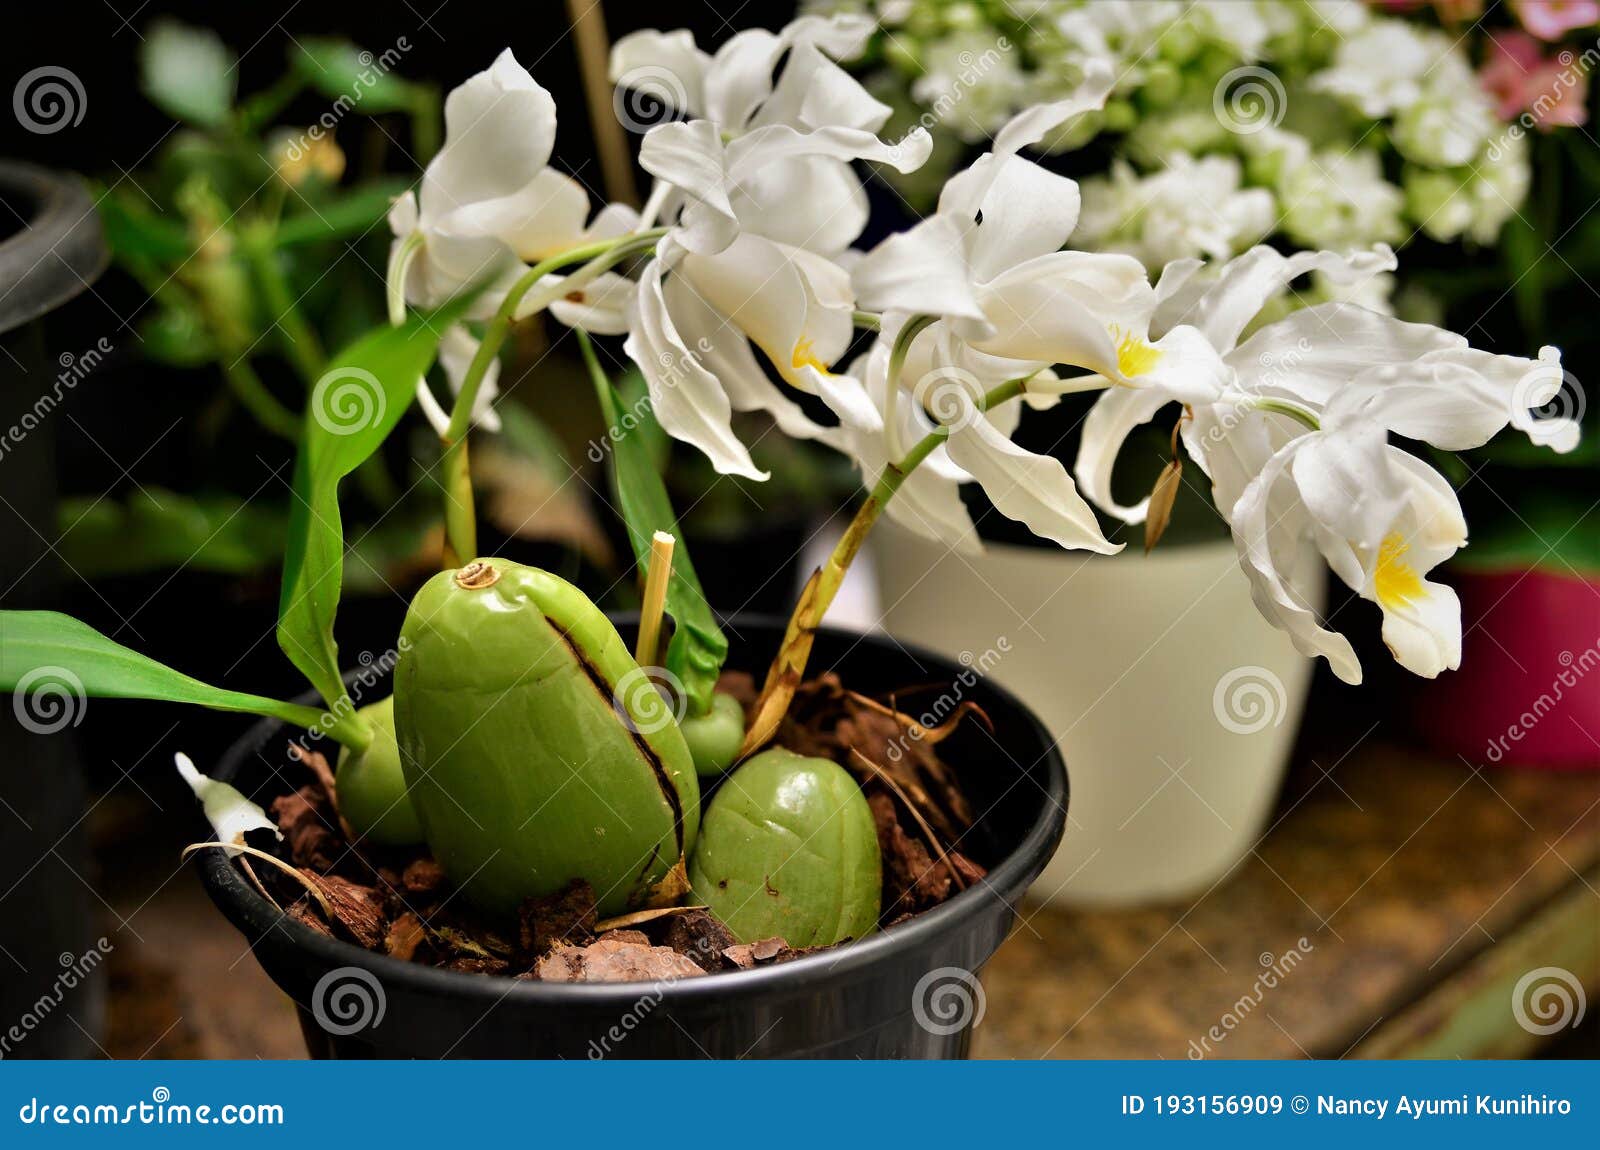 vaso com flores brancas da orquÃÂ­dea coelogyne cristata